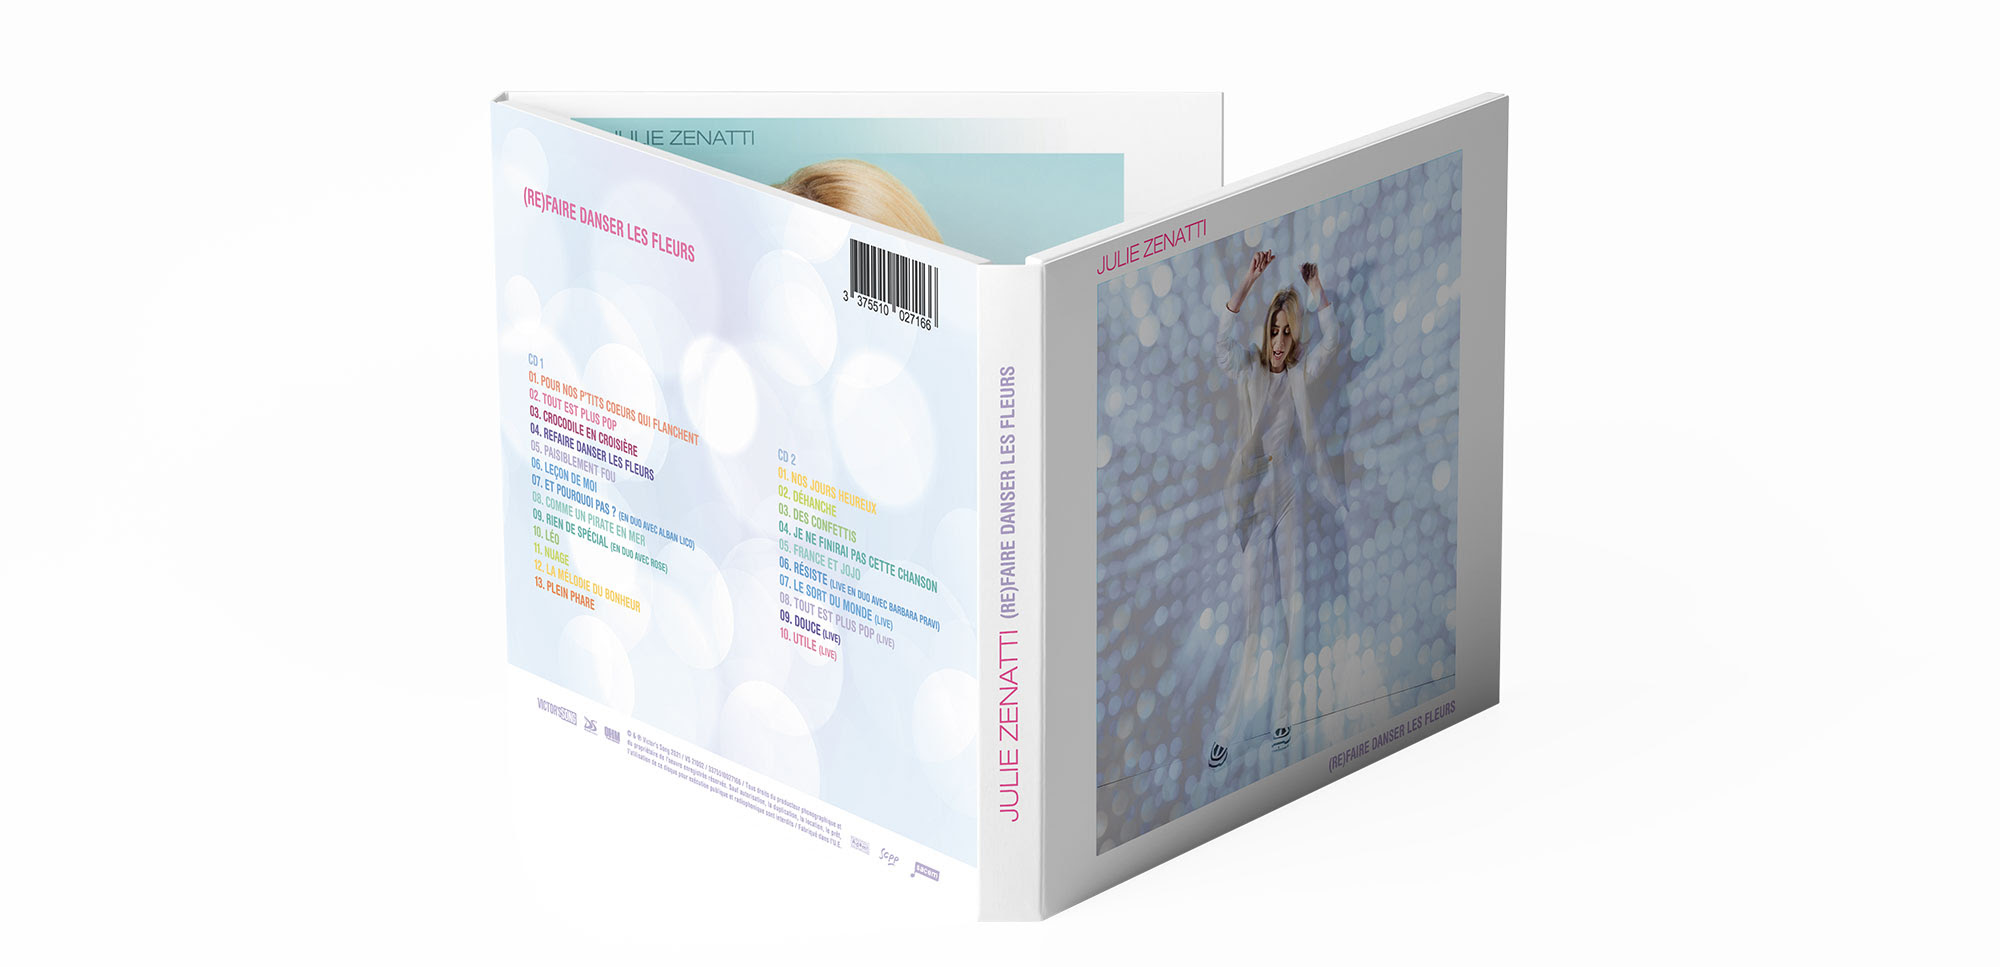  Julie Zenatti et la pochette de l'album Refaire Danser les Fleurs.